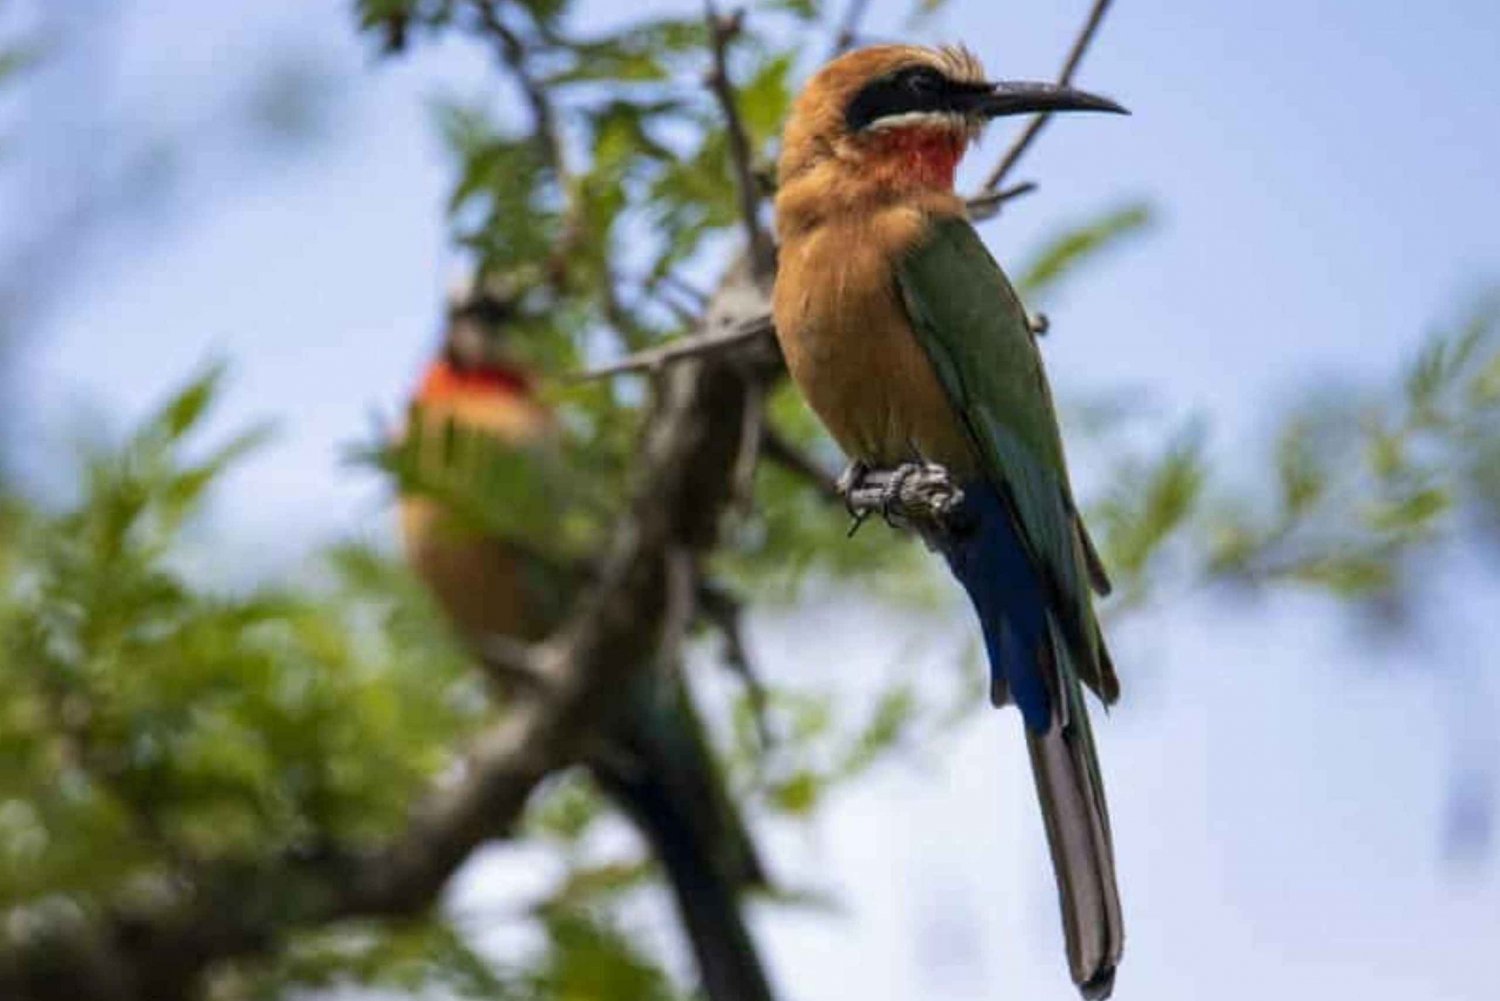 Victoria watervallen: Vogelspotten in het Zambezi National Park